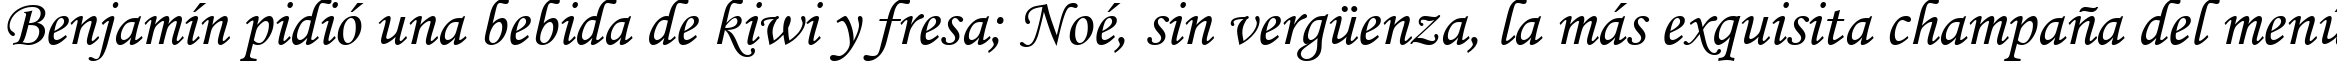 Пример написания шрифтом font353 текста на испанском